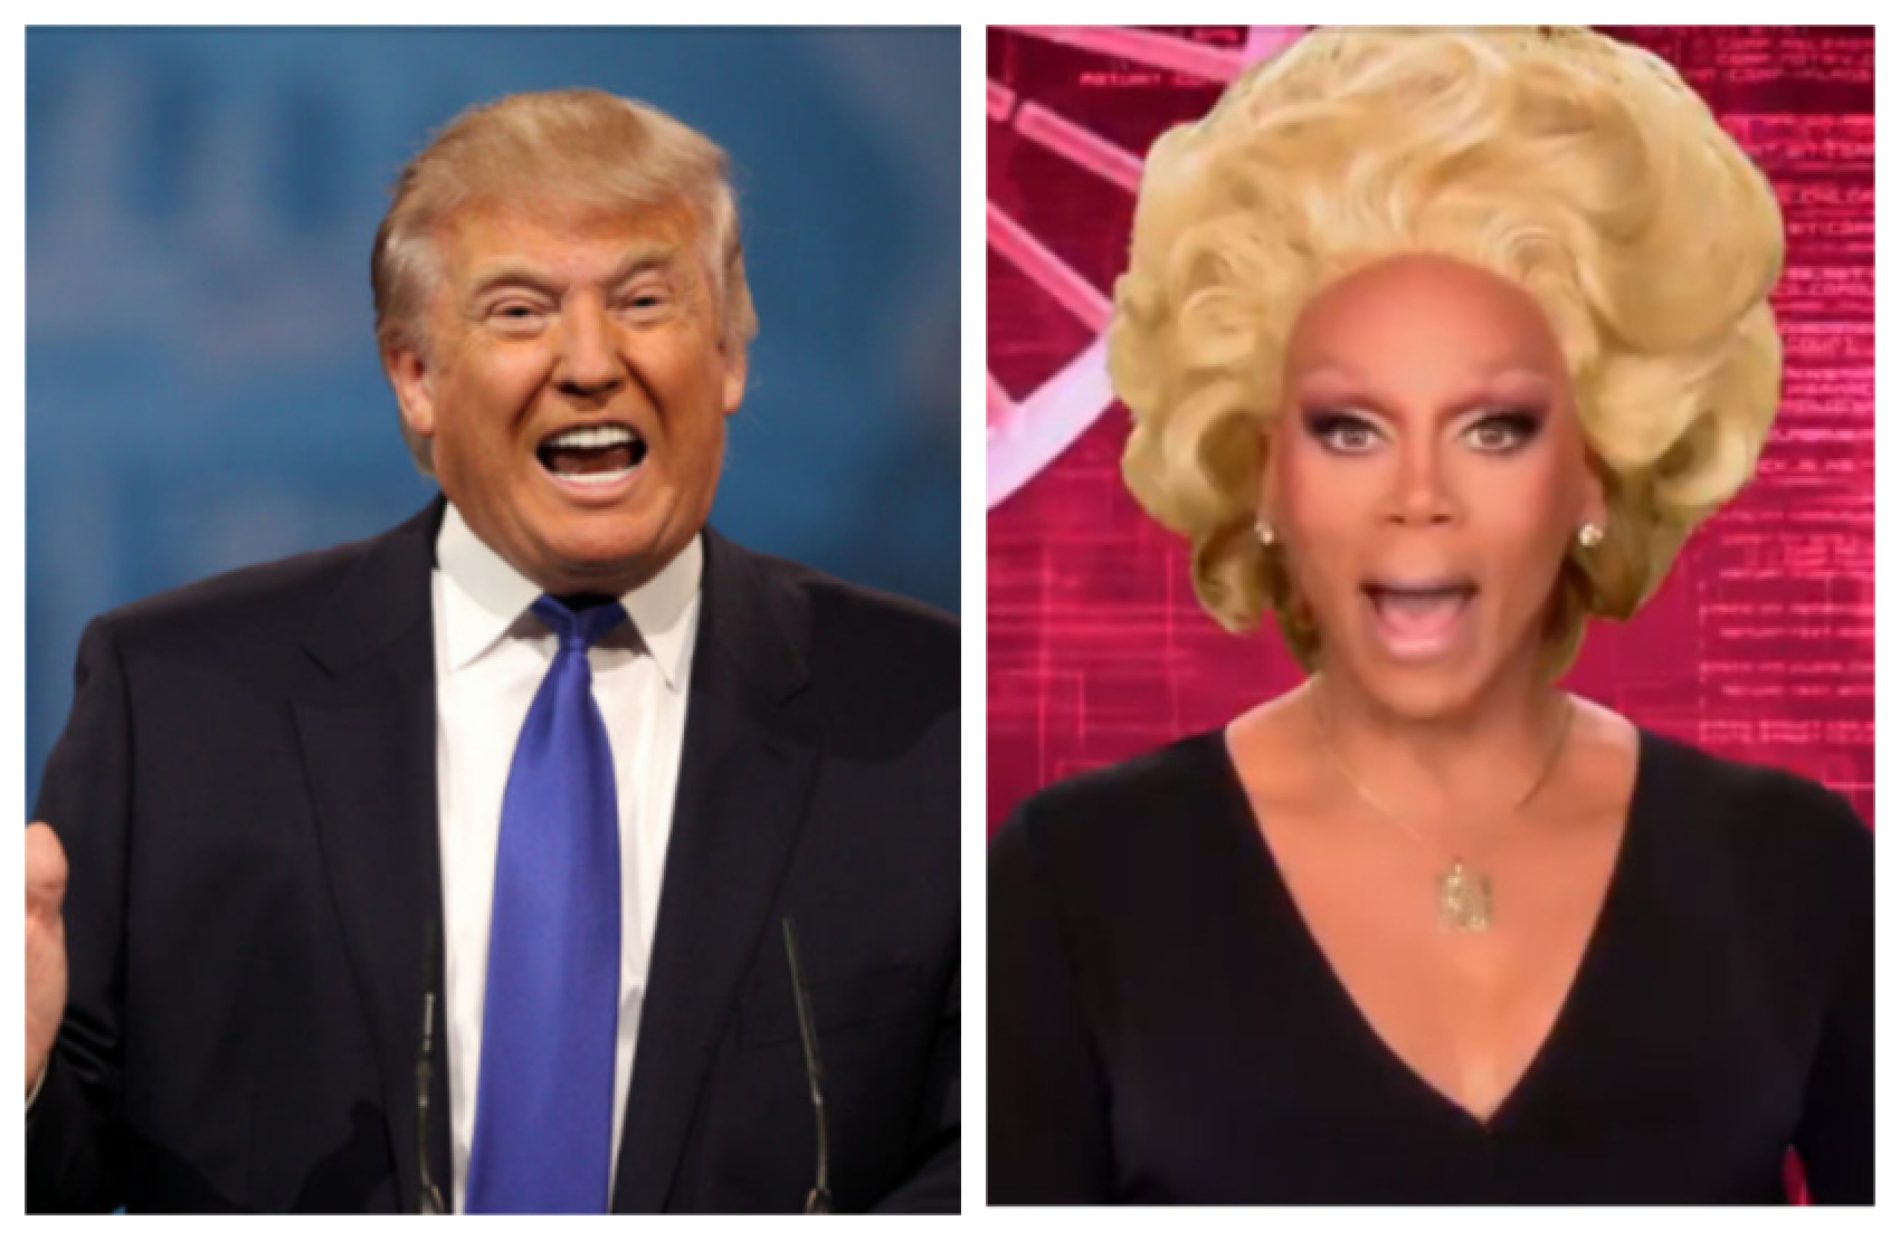 Donald Trump accidentally created a ‘RuPaul’s Drag Race’ hashtag